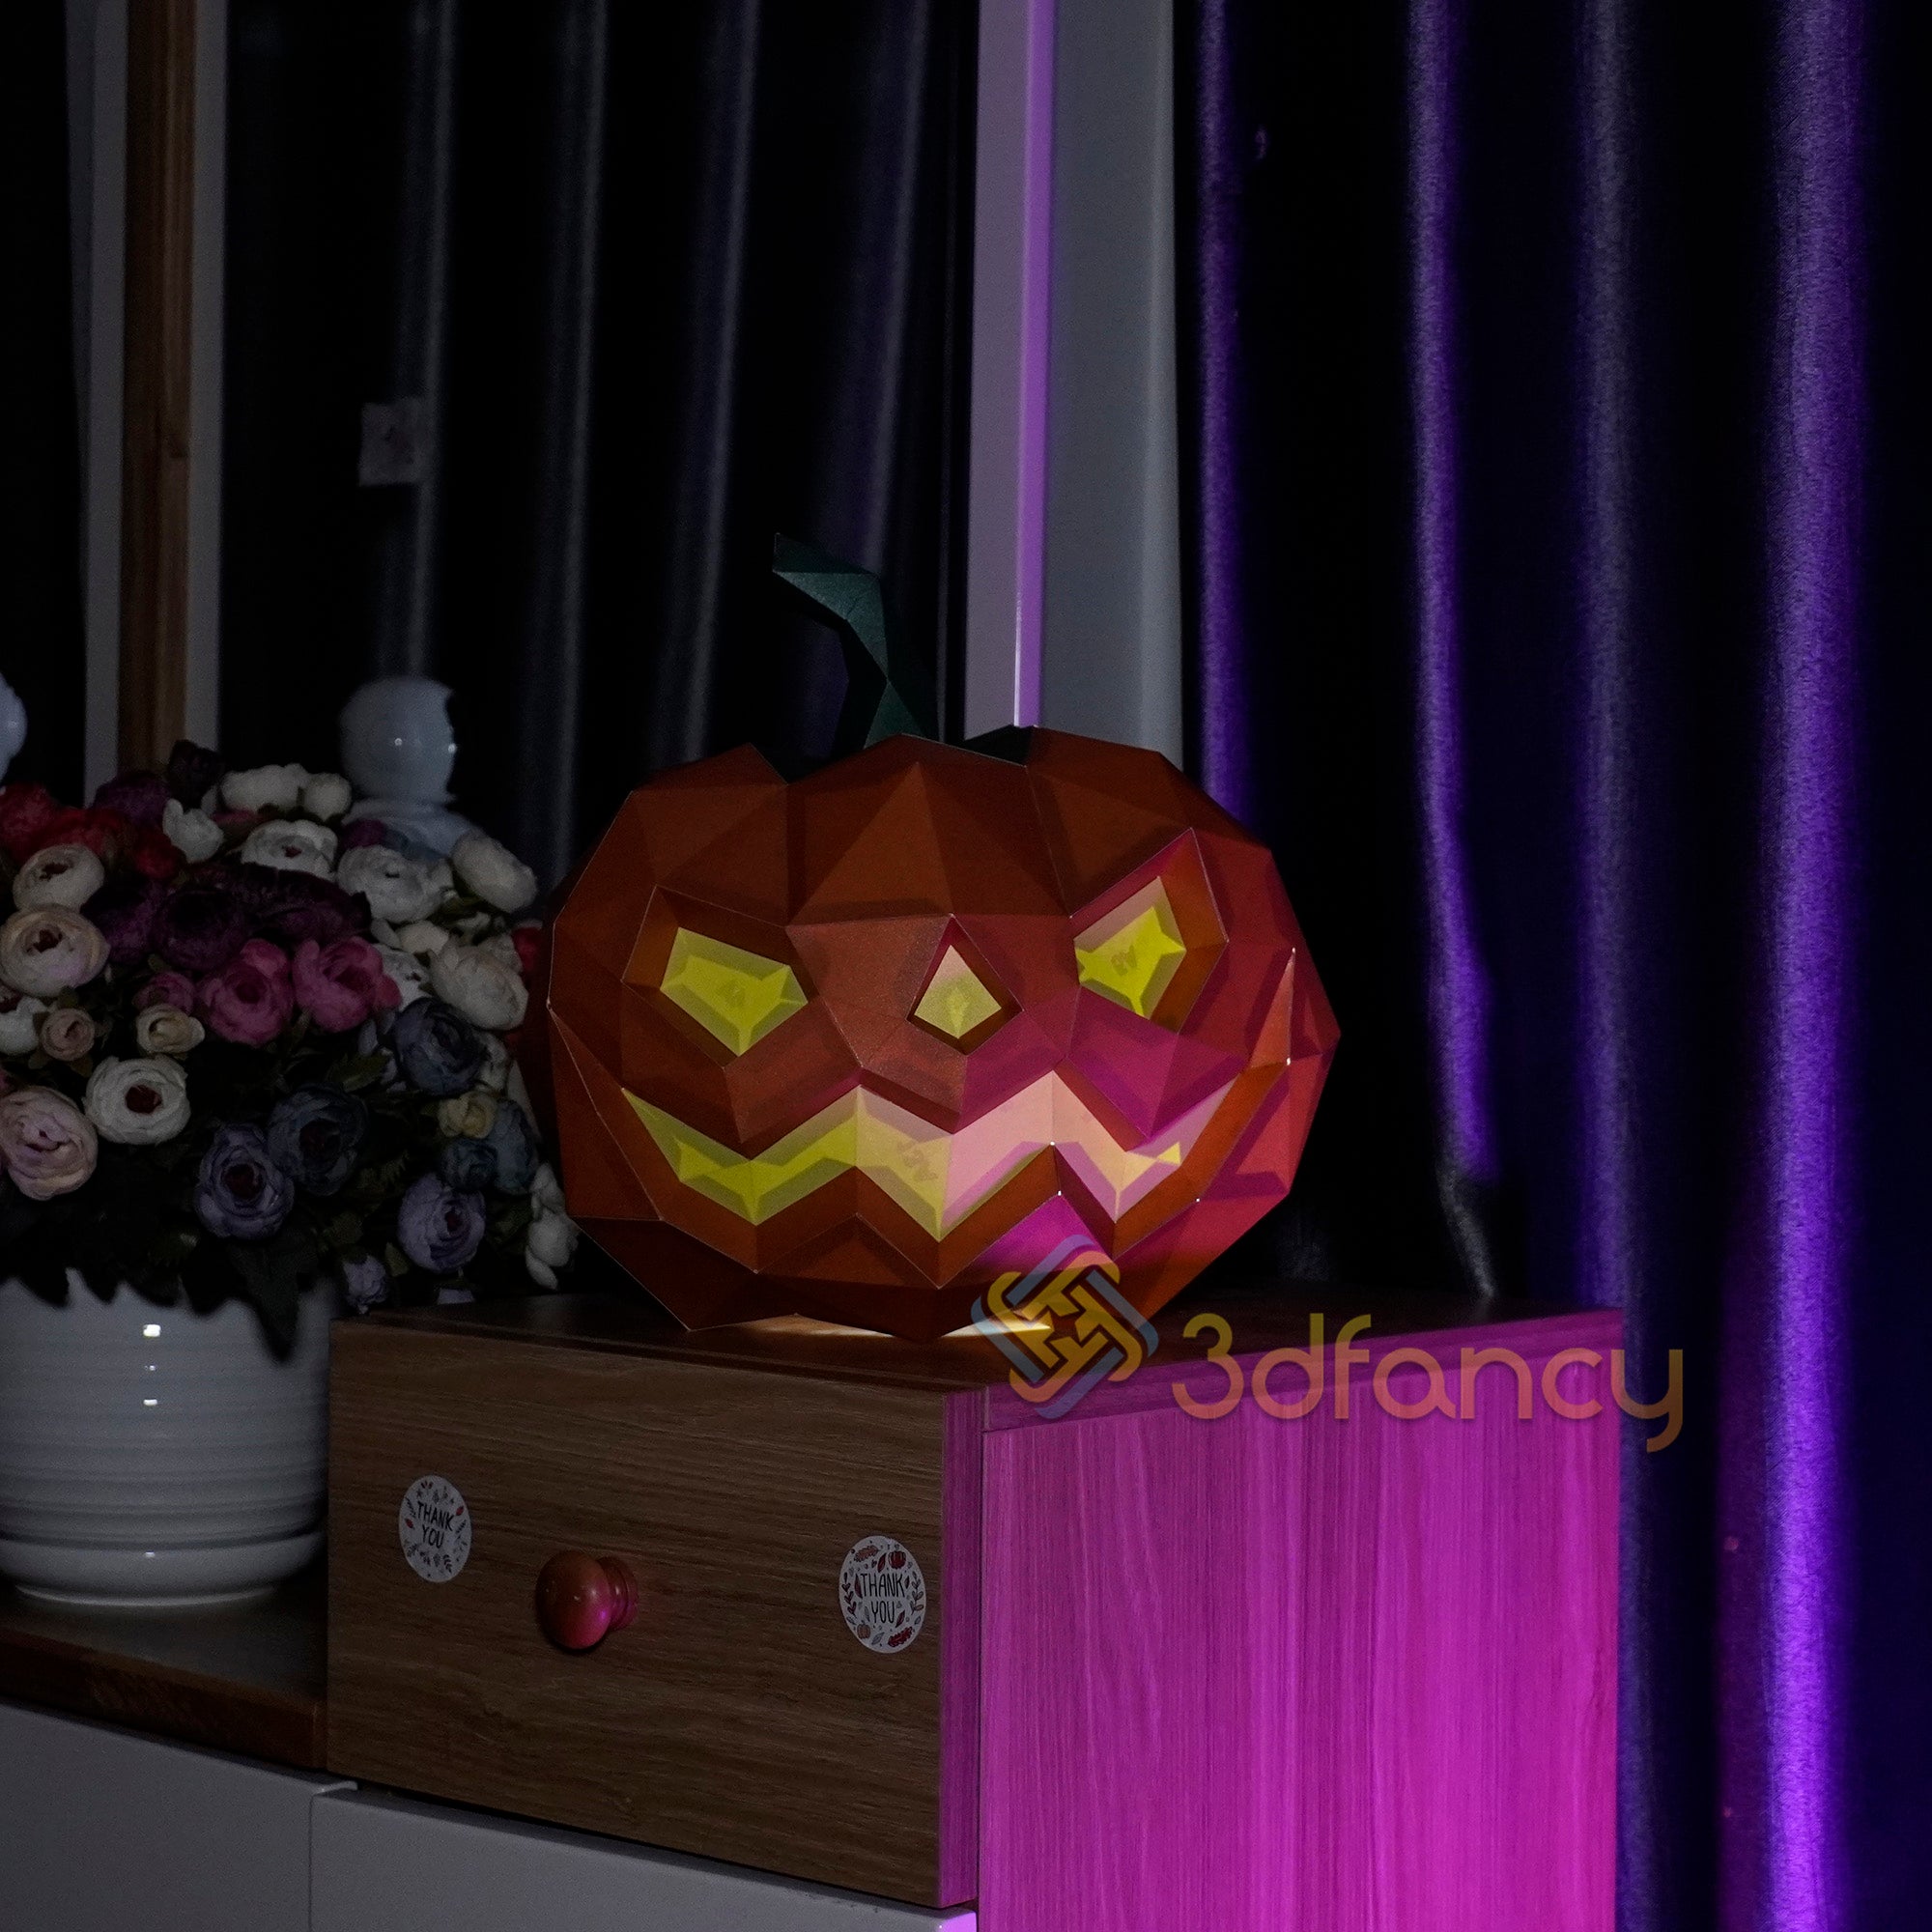 Pumpkin Papercraft PDF, SVG, Silhouette Studio Template For Creating 3D Pumpkin Halloween